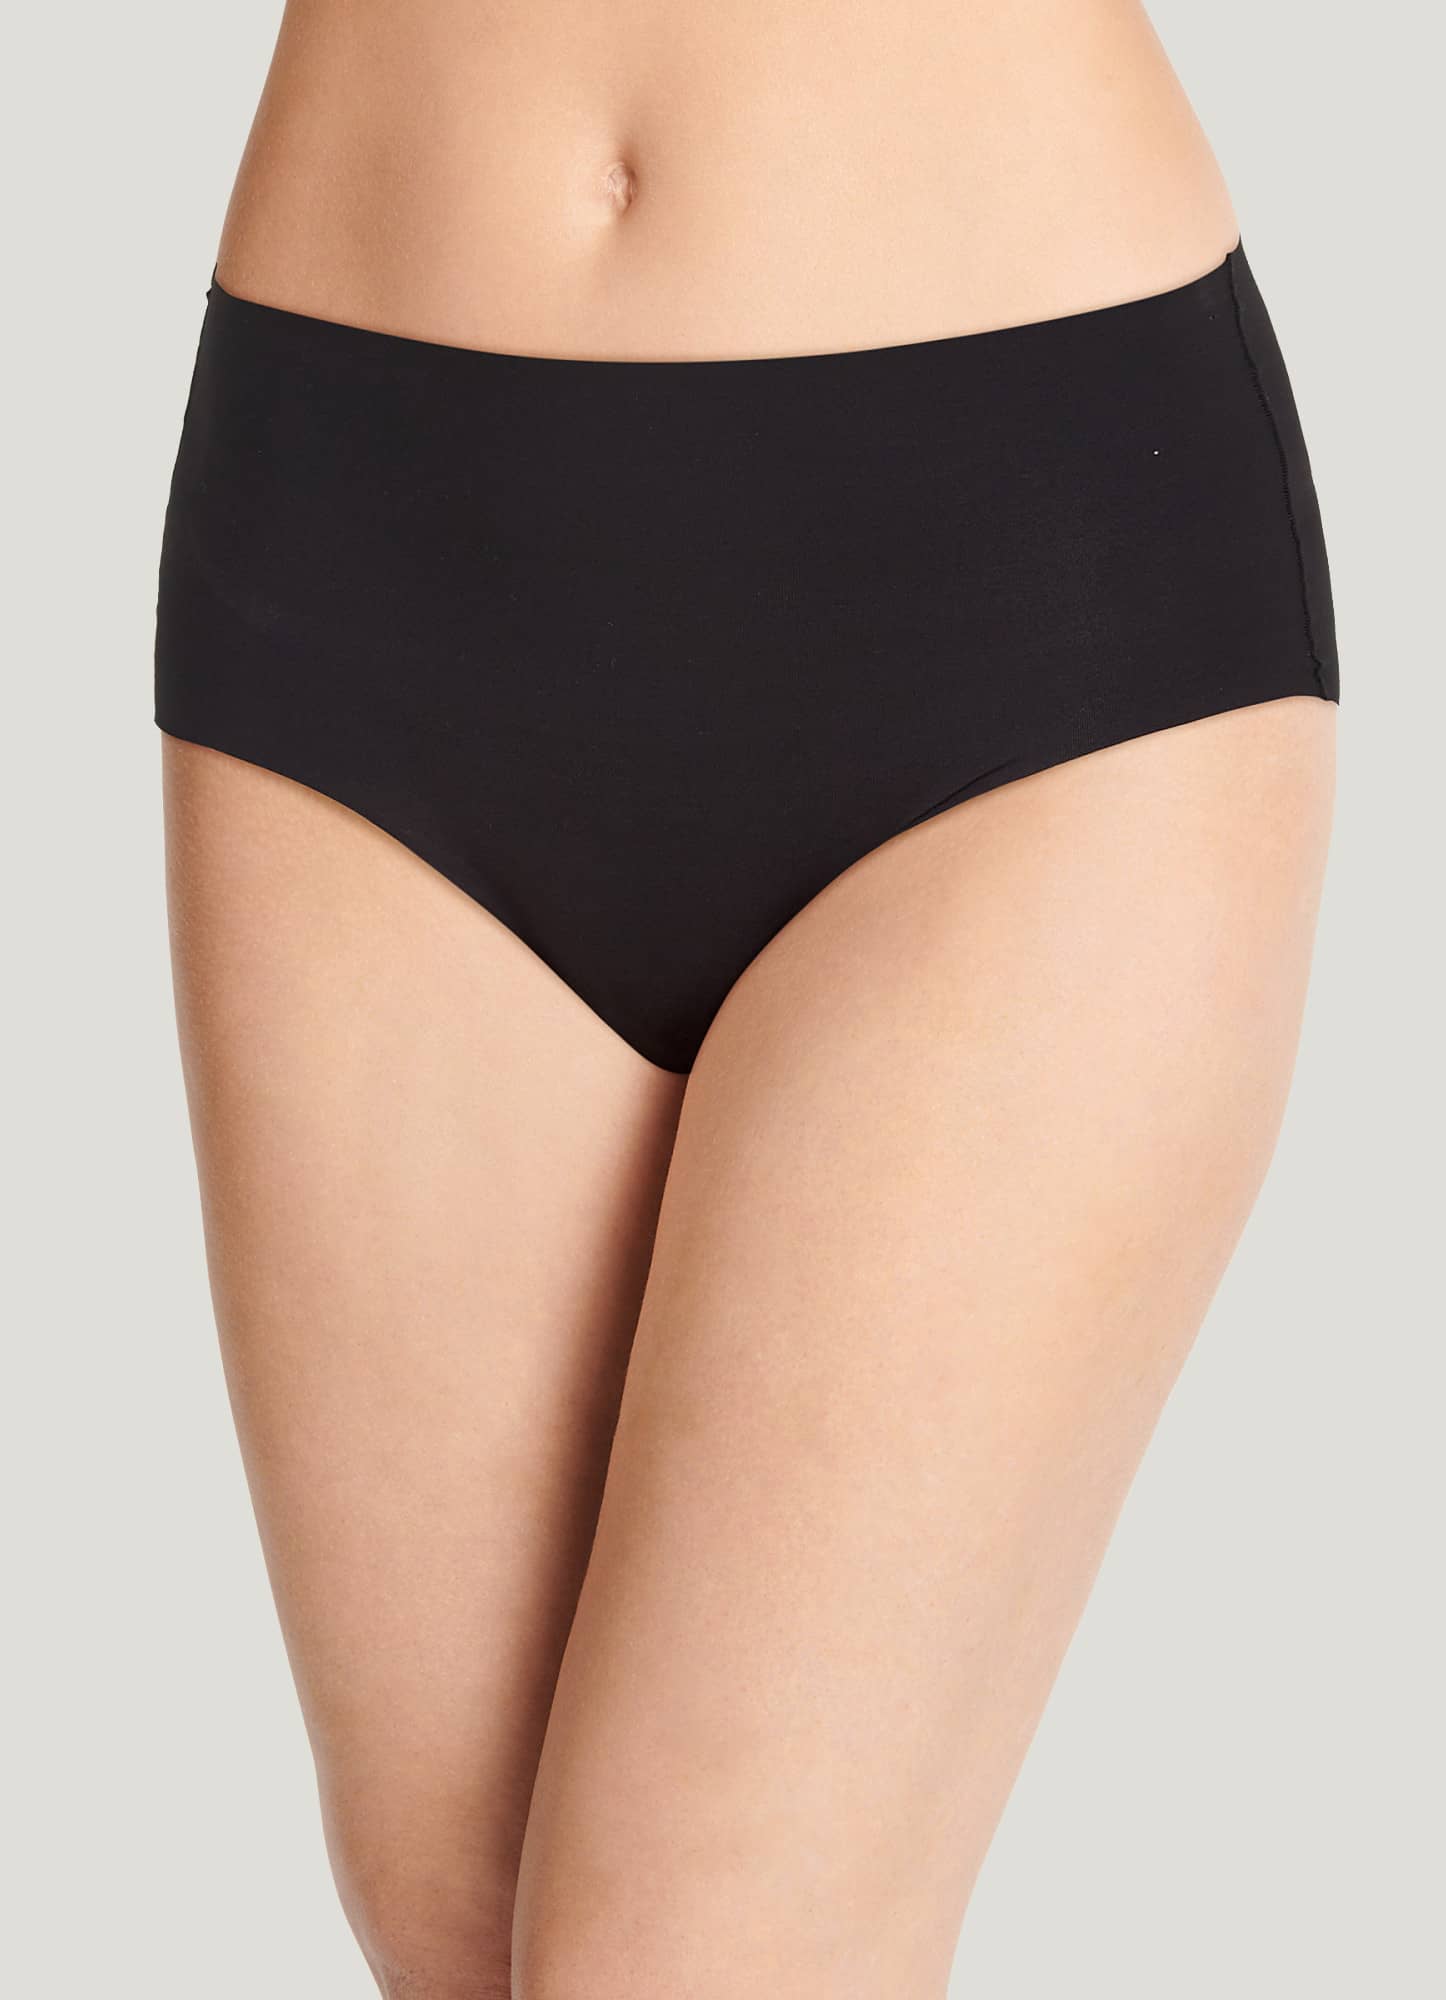 Shop Microfiber Underwear Collection for Undies Online